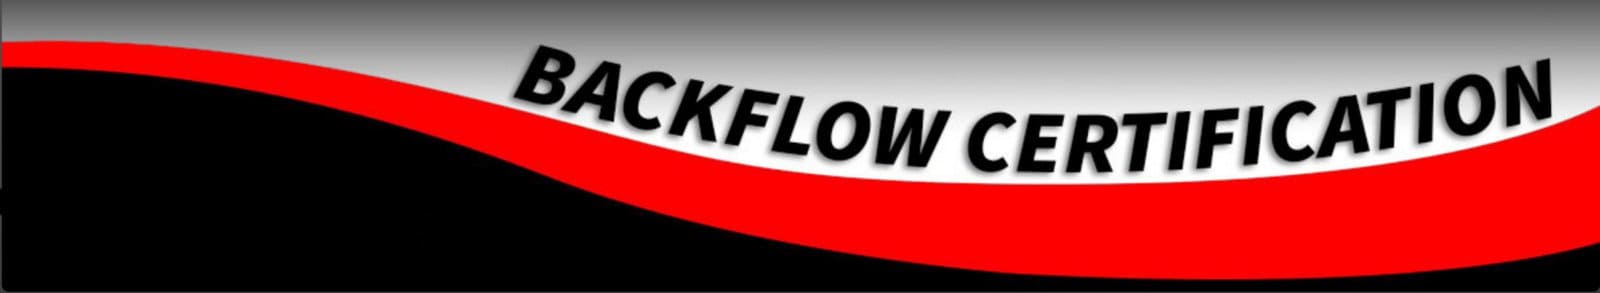 Schedule Backflow Service